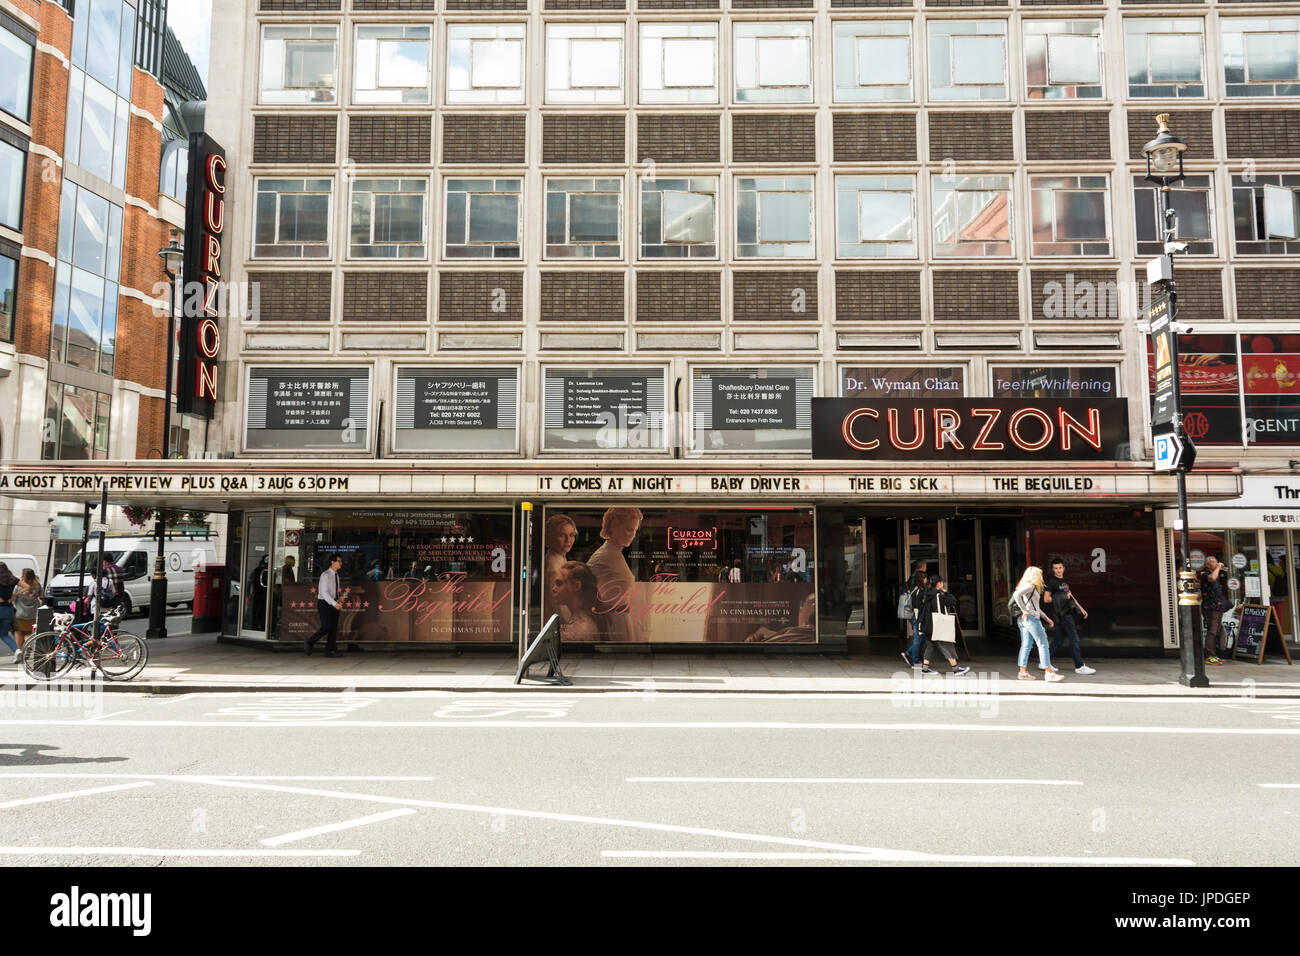 The Curzon Cinema Soho on Shaftesbury Avenue, London, UK Stock Photo